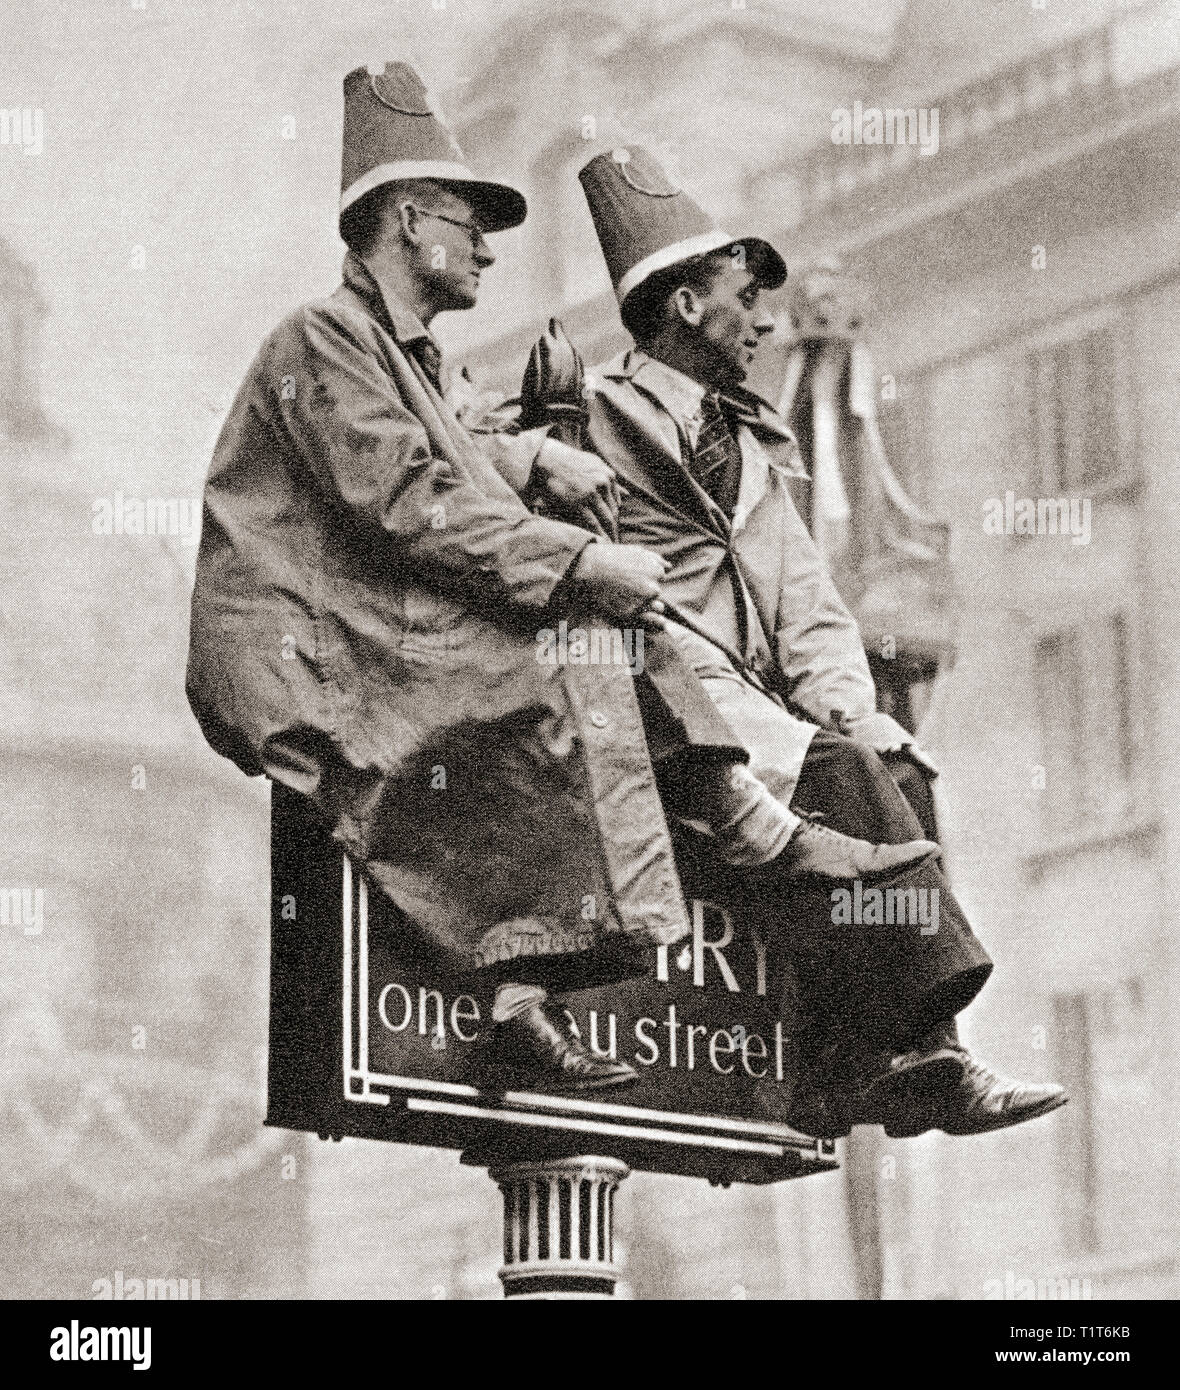 Dos hombres en la cima de una señal de tráfico con el fin de obtener una mejor vista de la procesión de la coronación de George VI y la Reina Elizabeth, Londres, Inglaterra, en 1937. A partir de la coronación en imágenes, publicado en 1937. Foto de stock